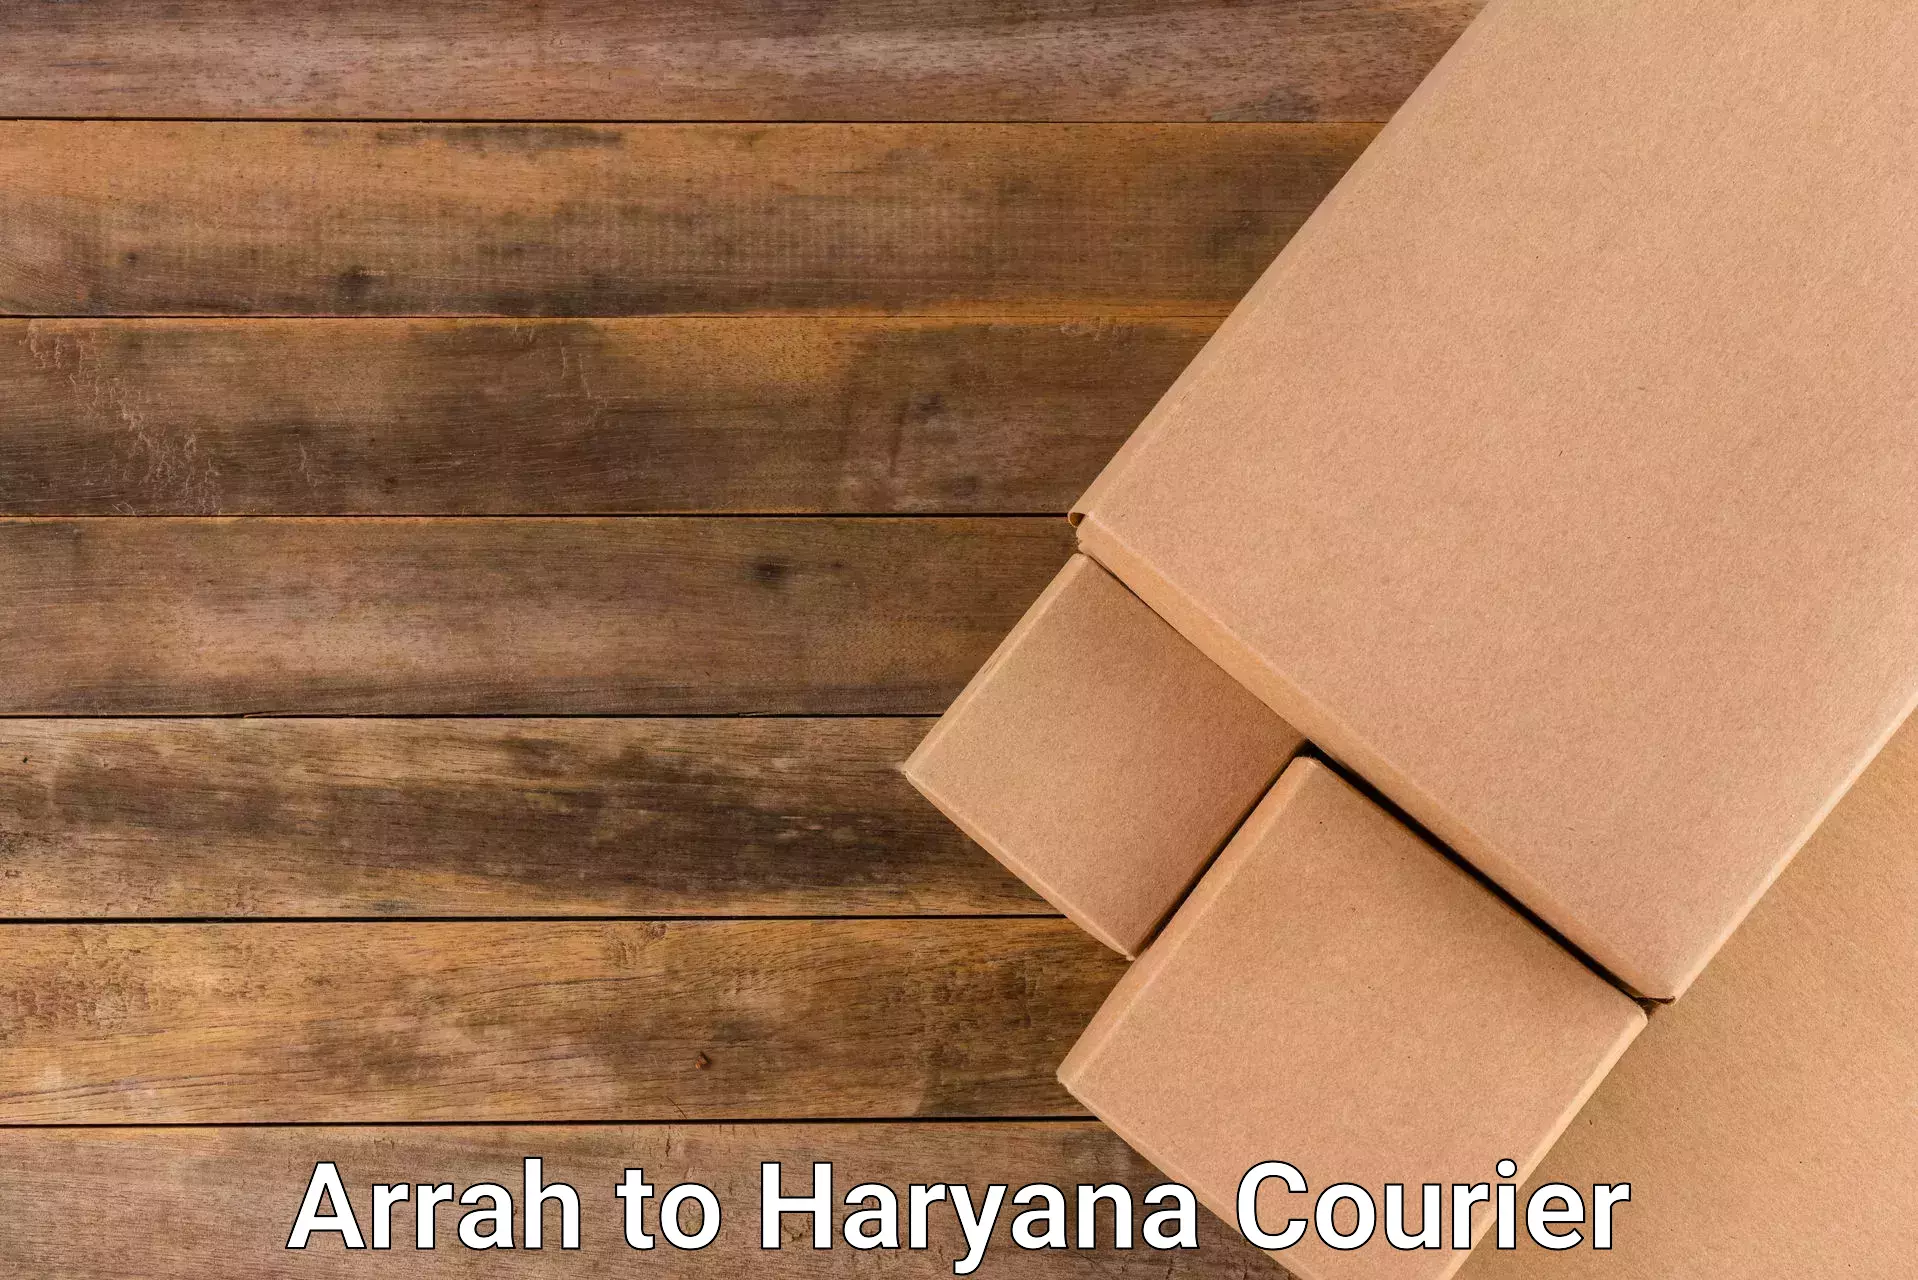 High value parcel delivery Arrah to Gurugram